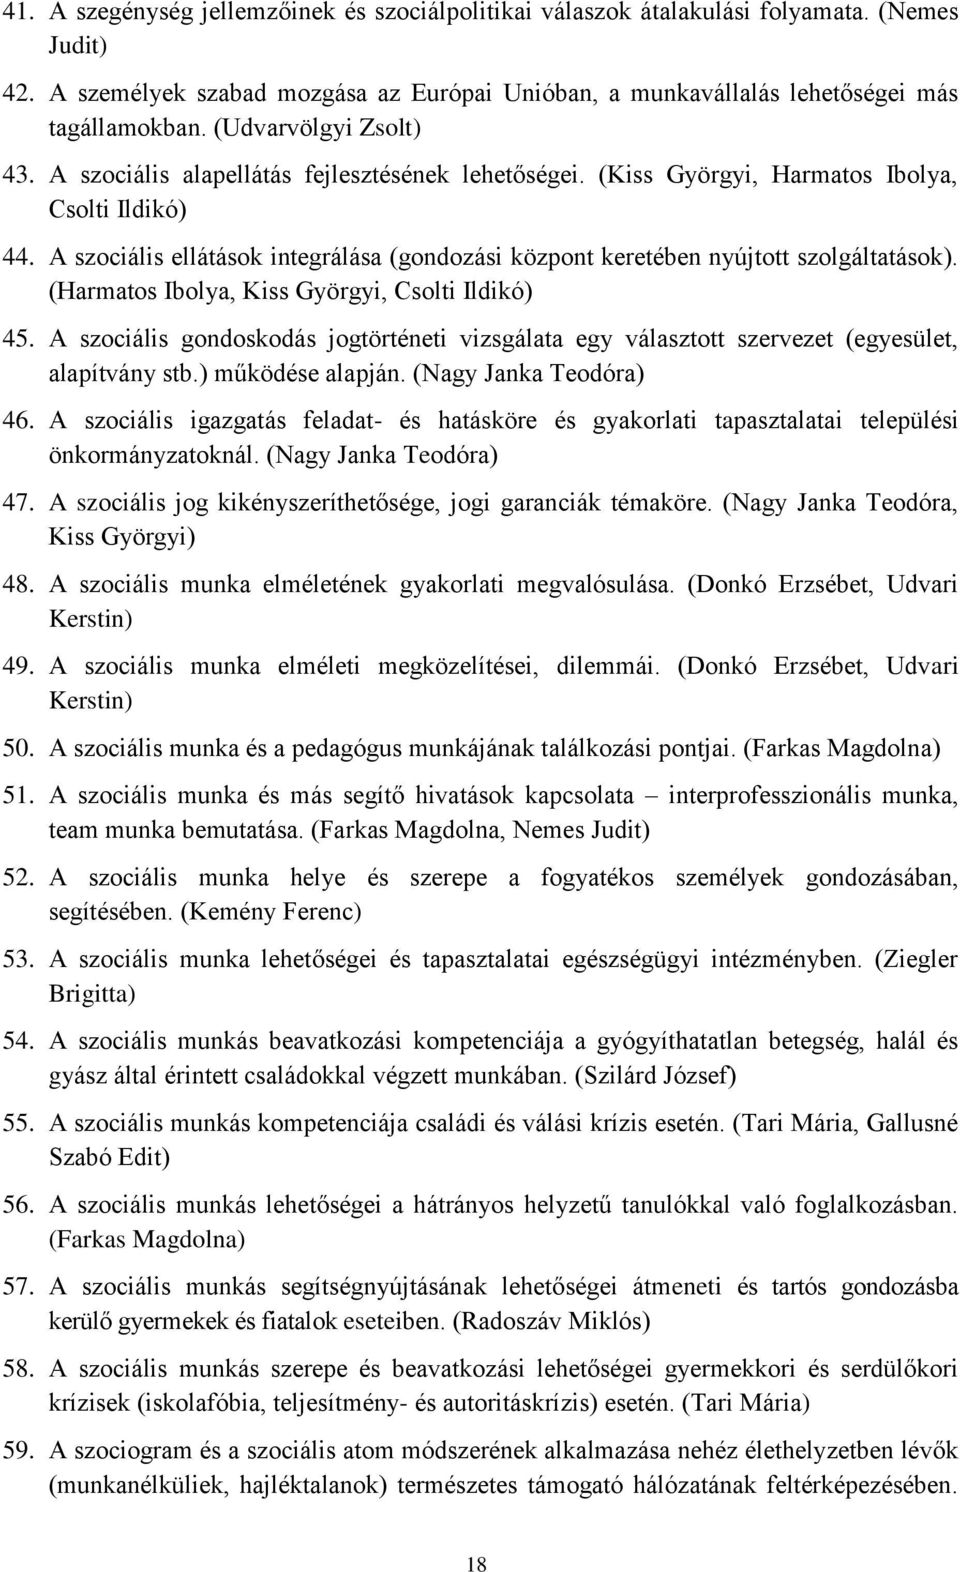 A szociális ellátások integrálása (gondozási központ keretében nyújtott szolgáltatások). (Harmatos Ibolya, Kiss Györgyi, Csolti Ildikó) 45.